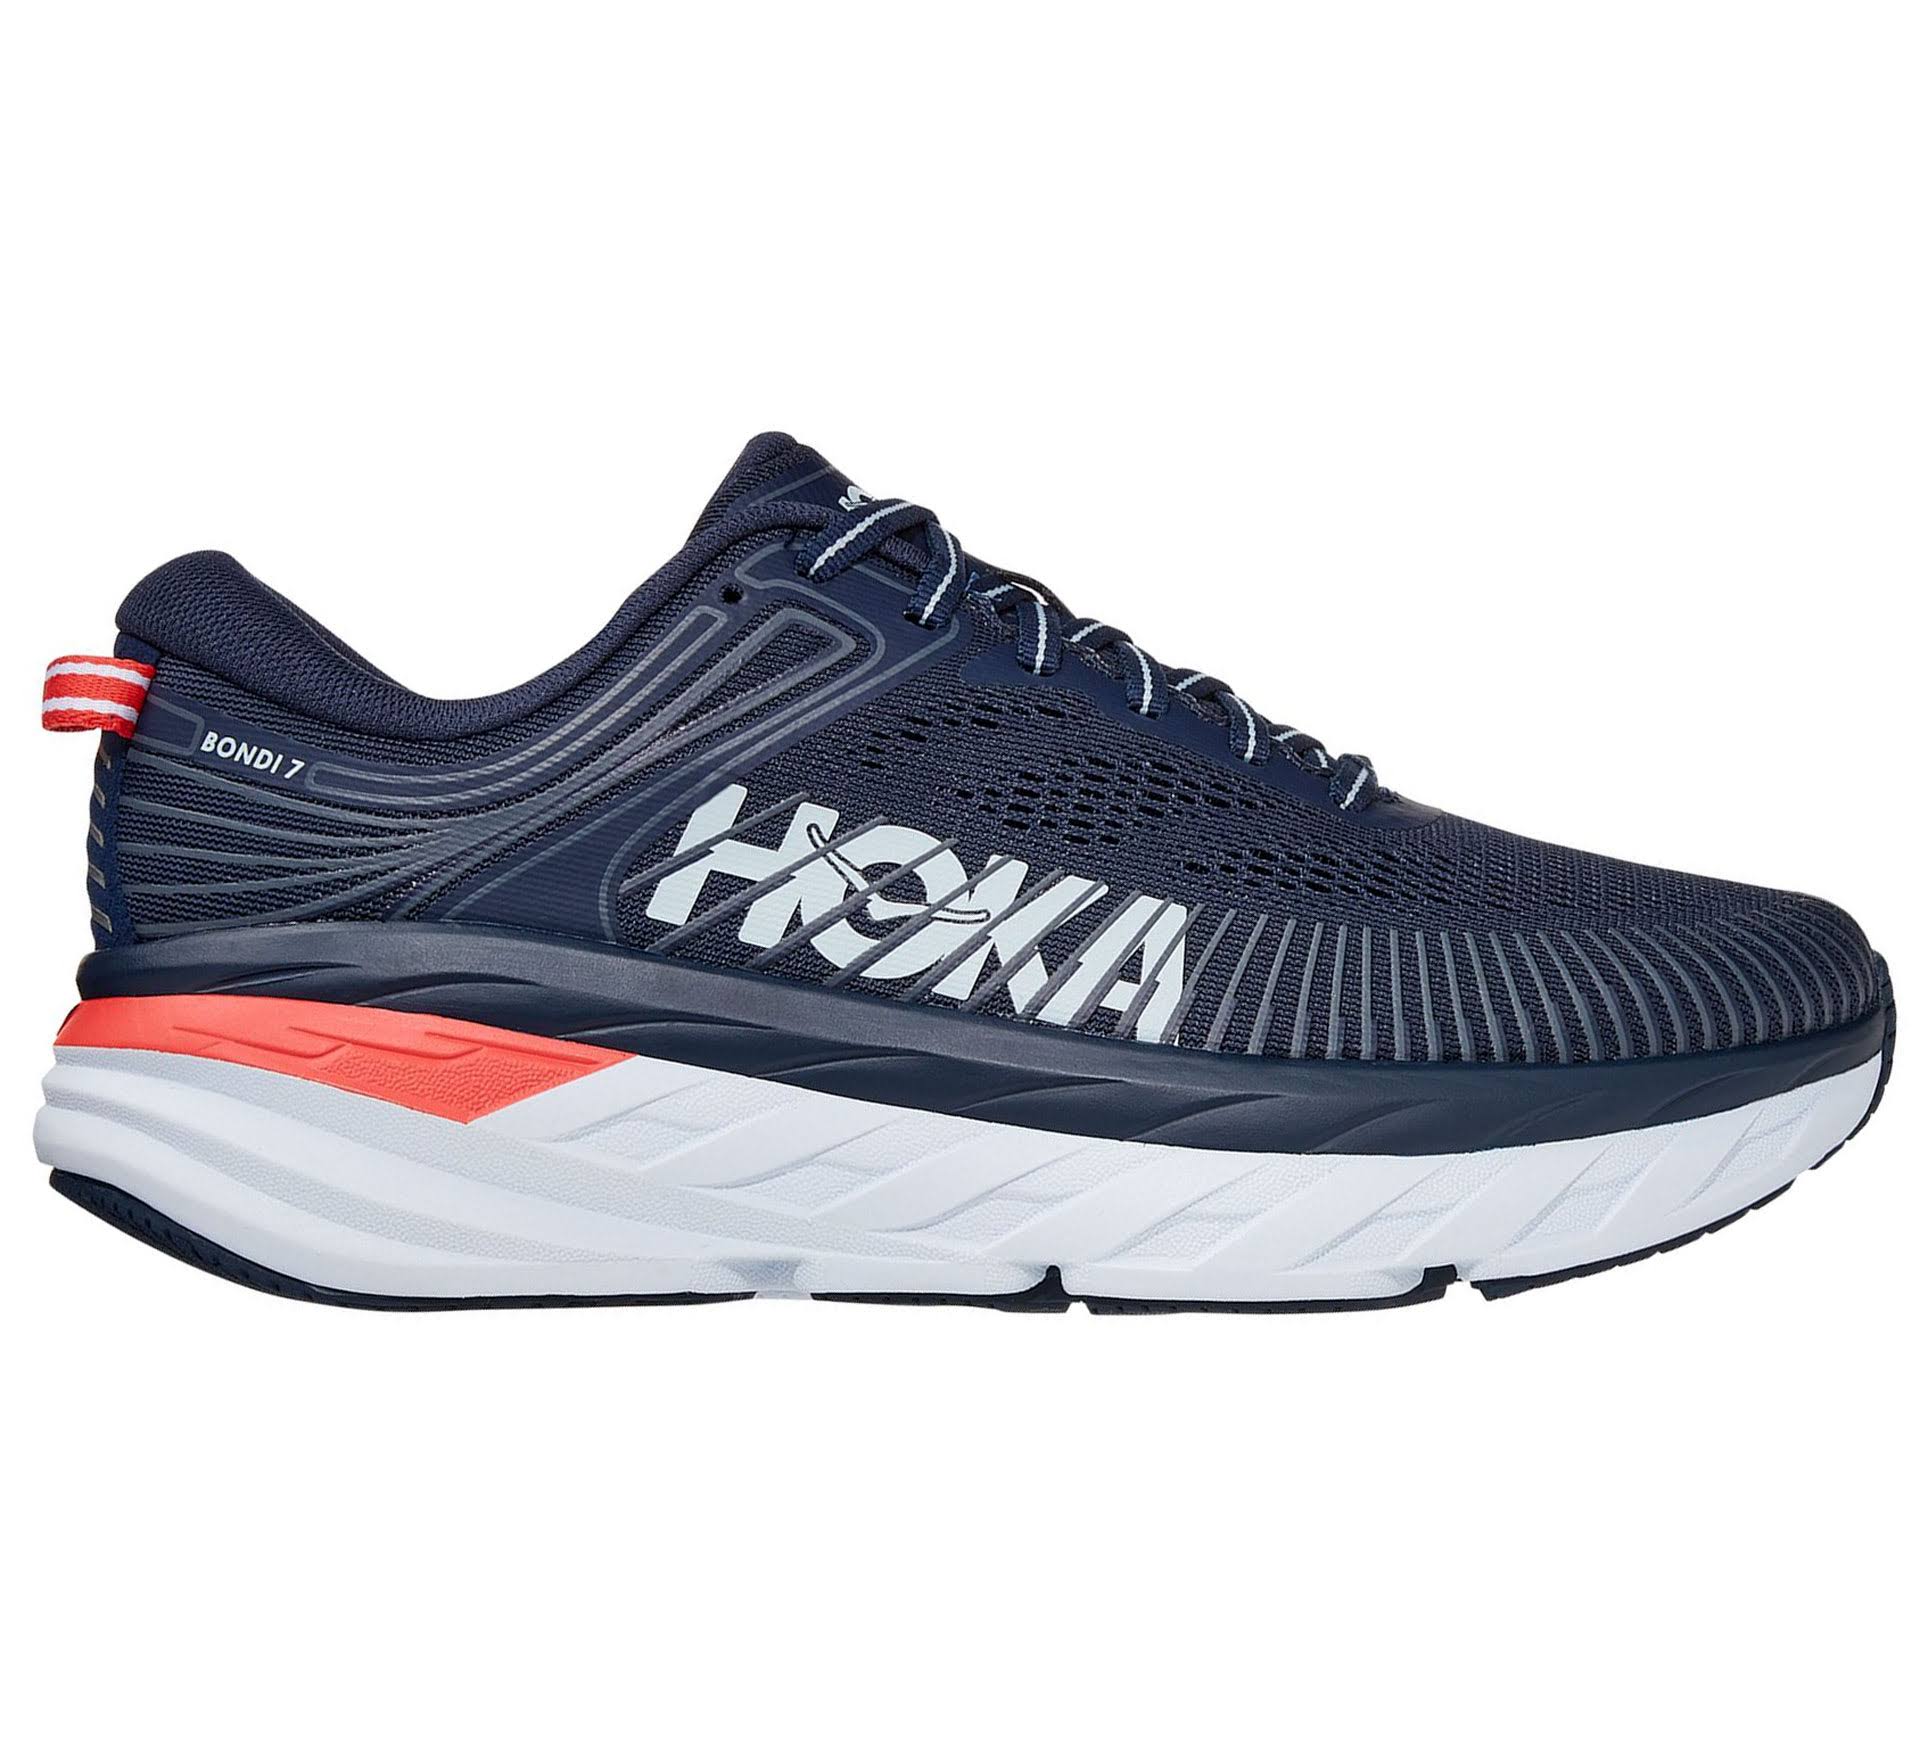 HOKA Bondi 7 - Running Shoes - Women's